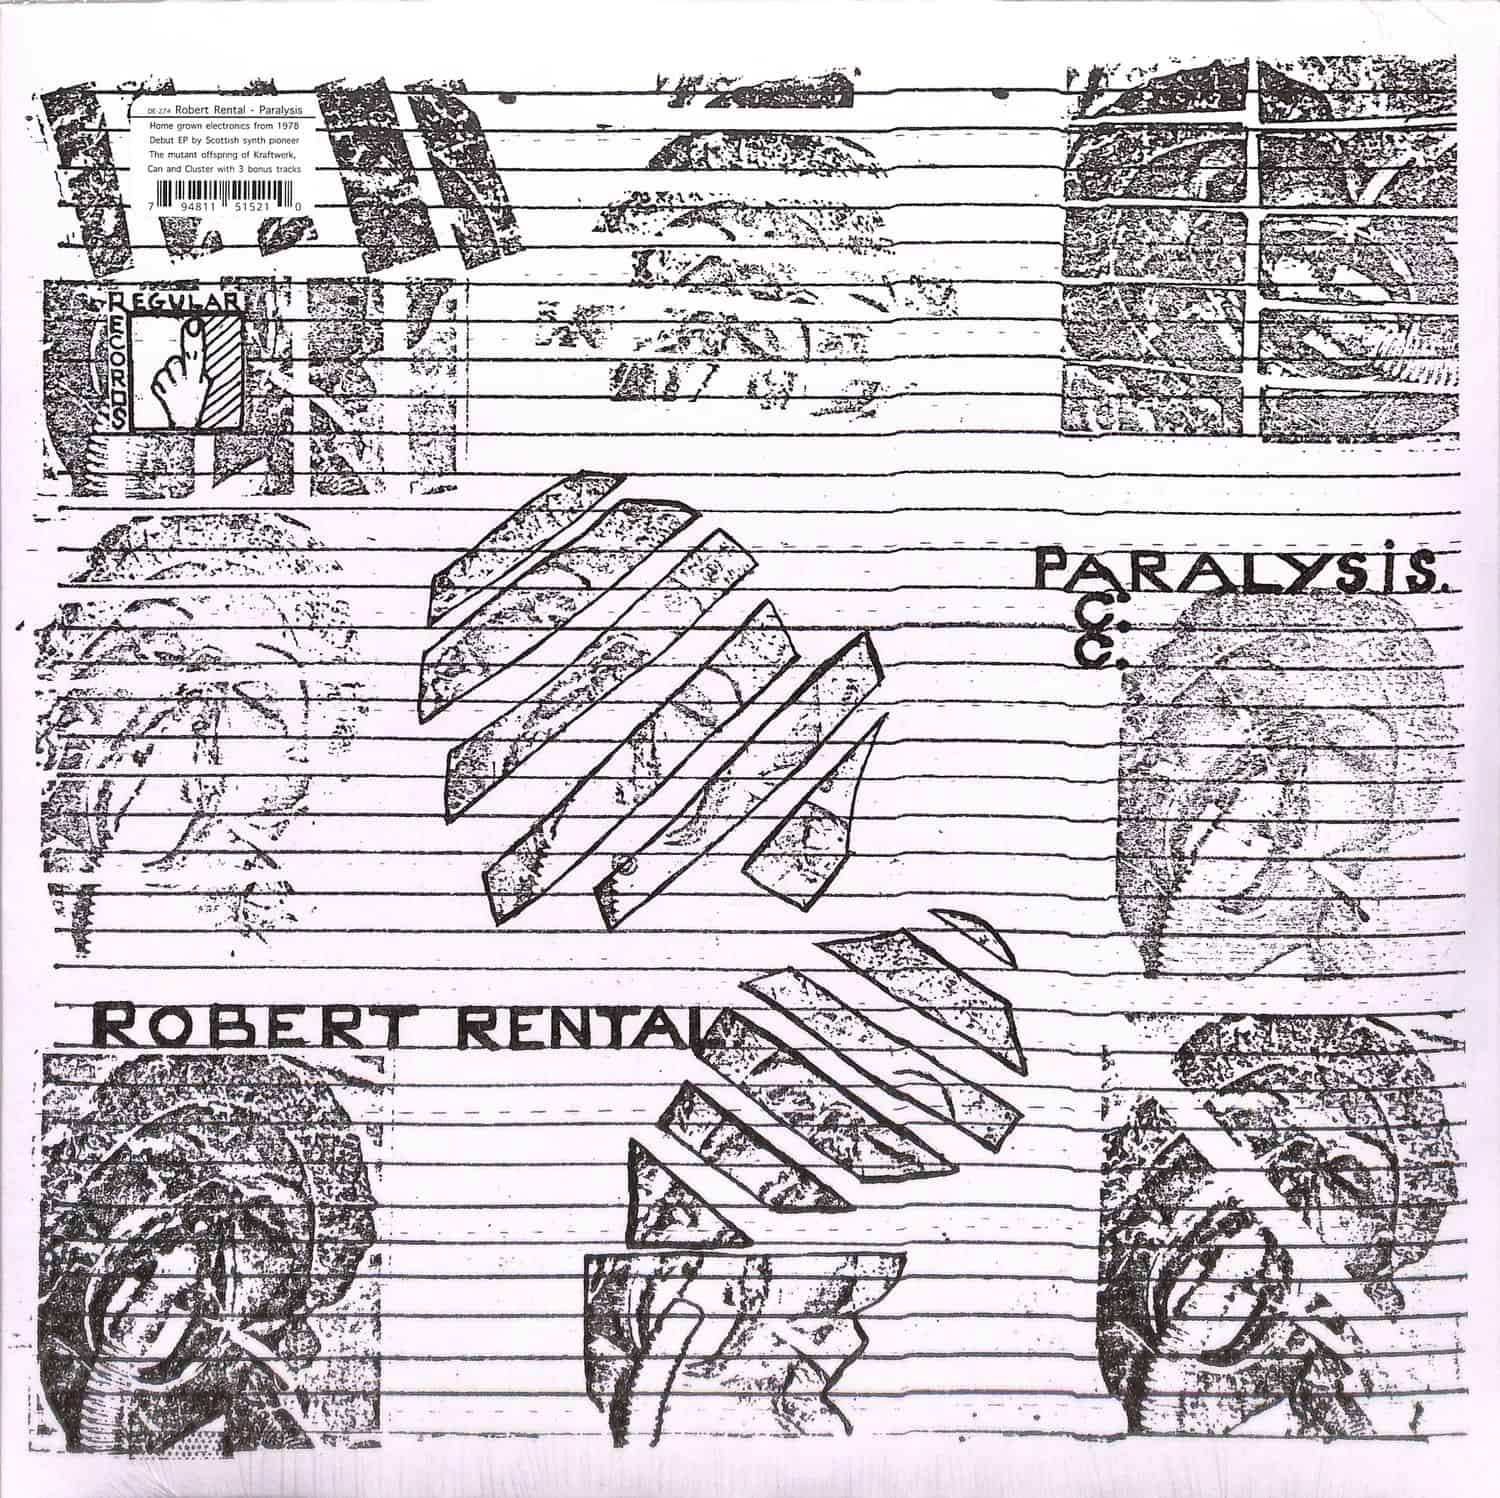 Robert Rental - PARALYSIS